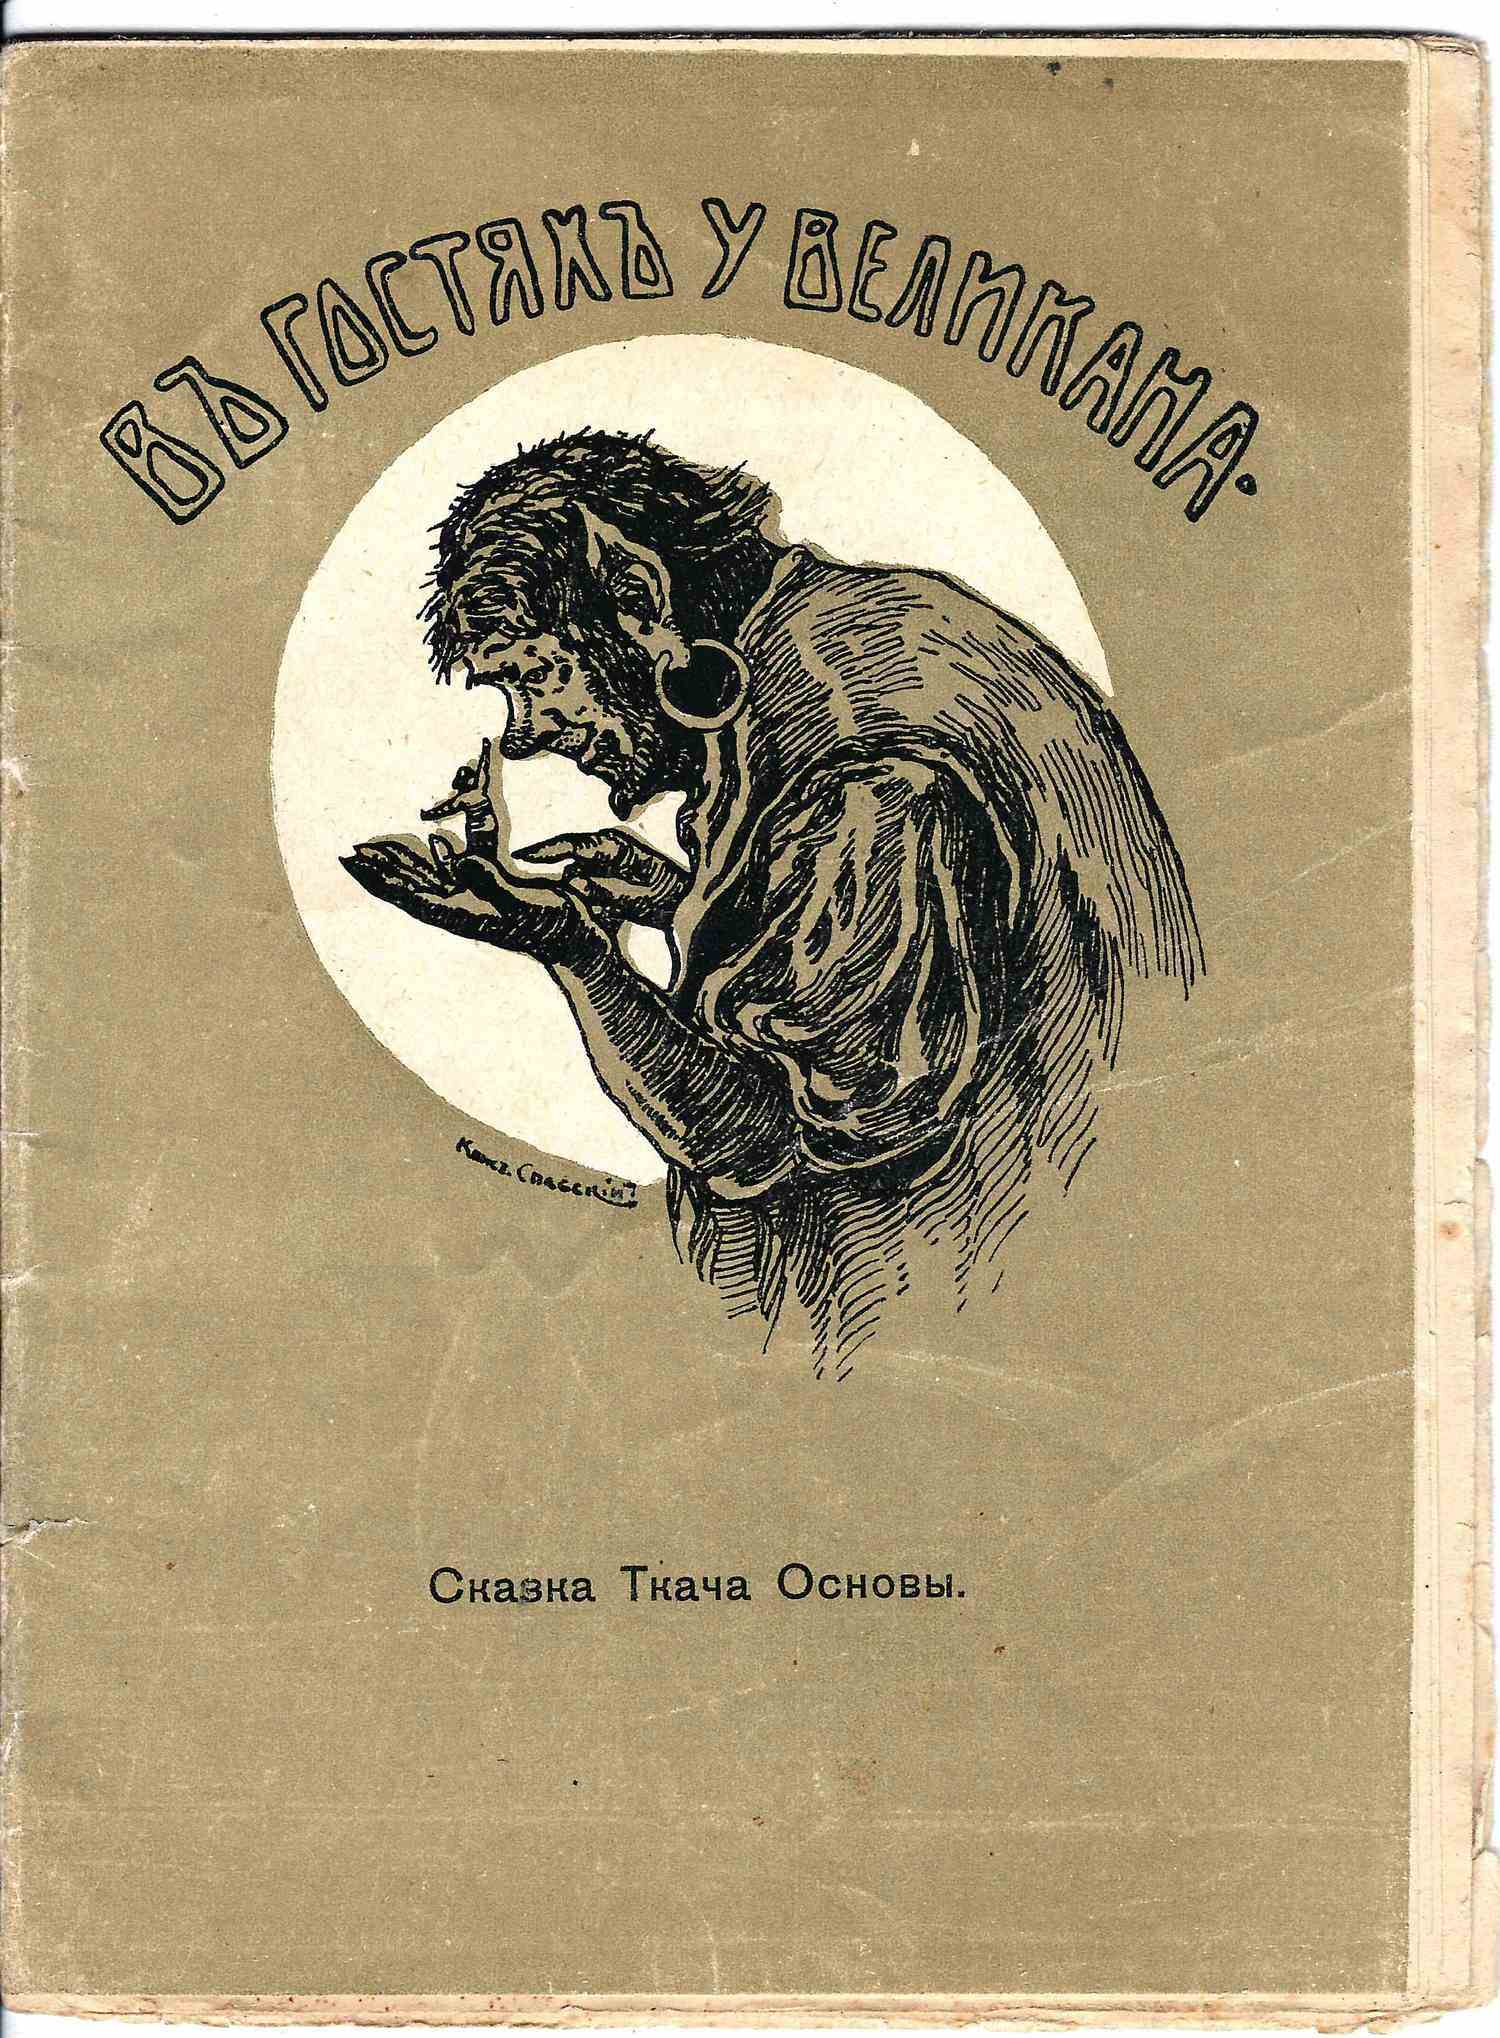 (Федоров-Давыдов А.А.) В гостях у великана. Сказка ткача основы (М., 1914).